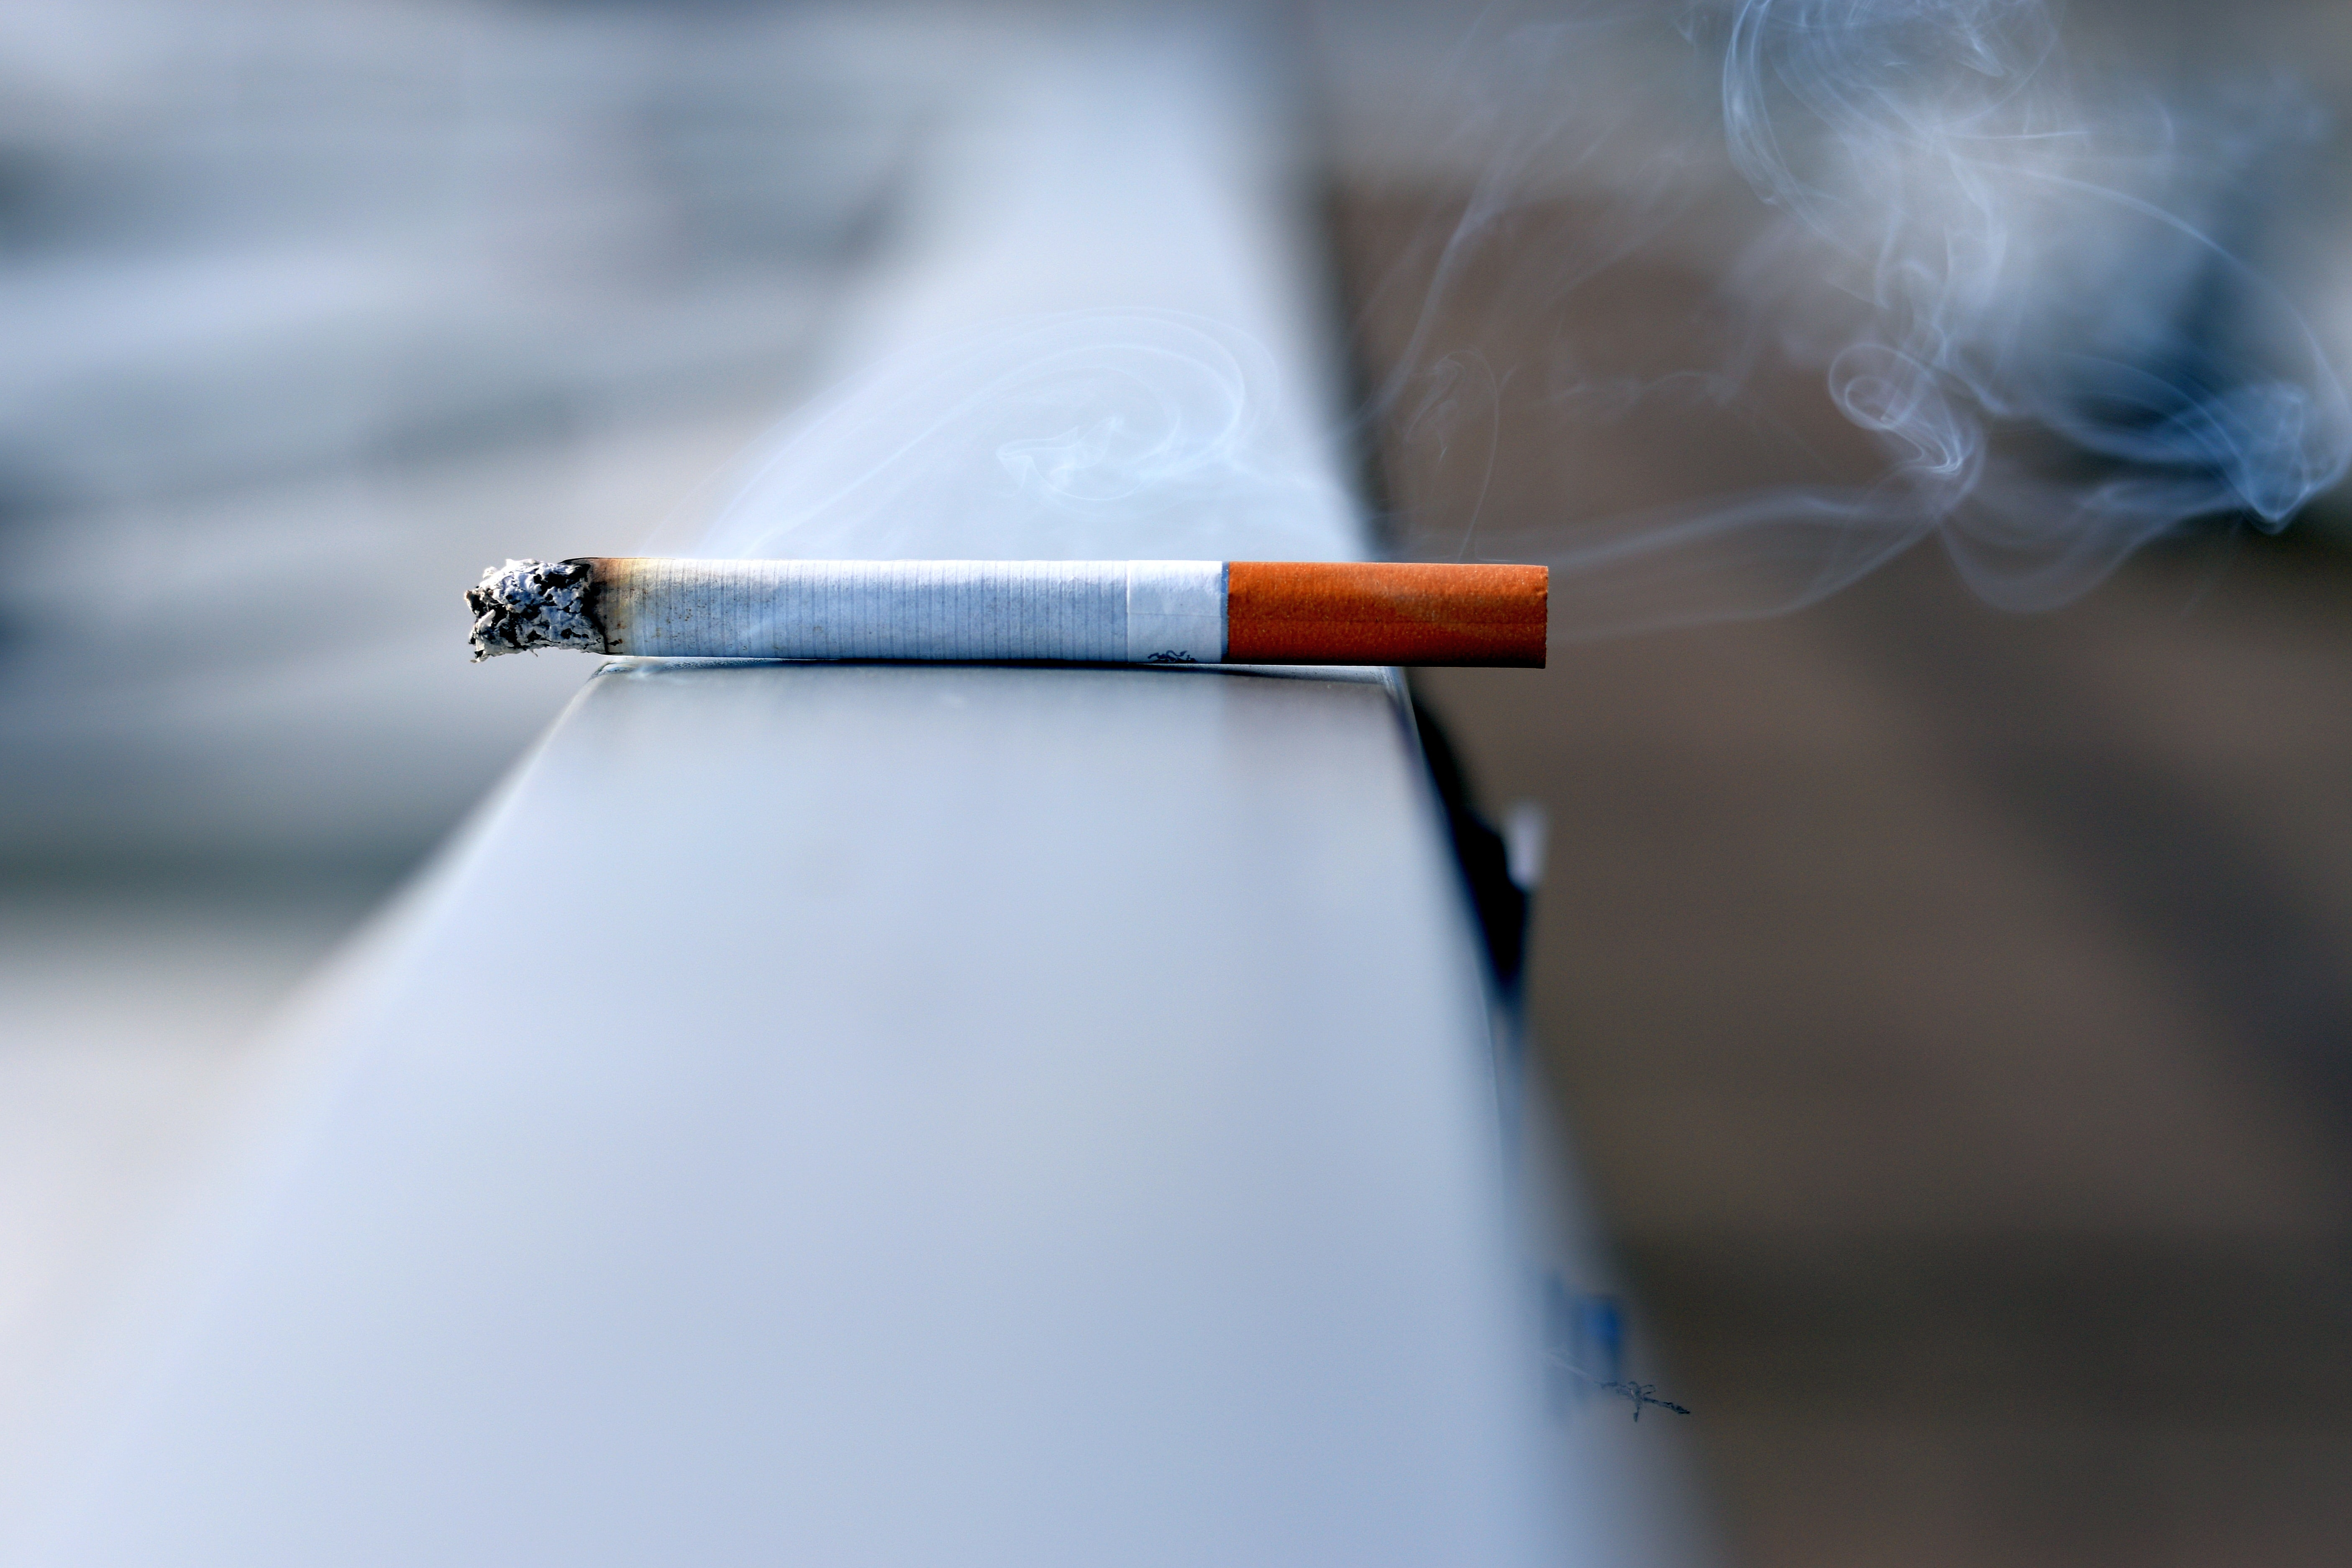 dohányzásellenes embléma hagyja abba a dohányzást egyenesen